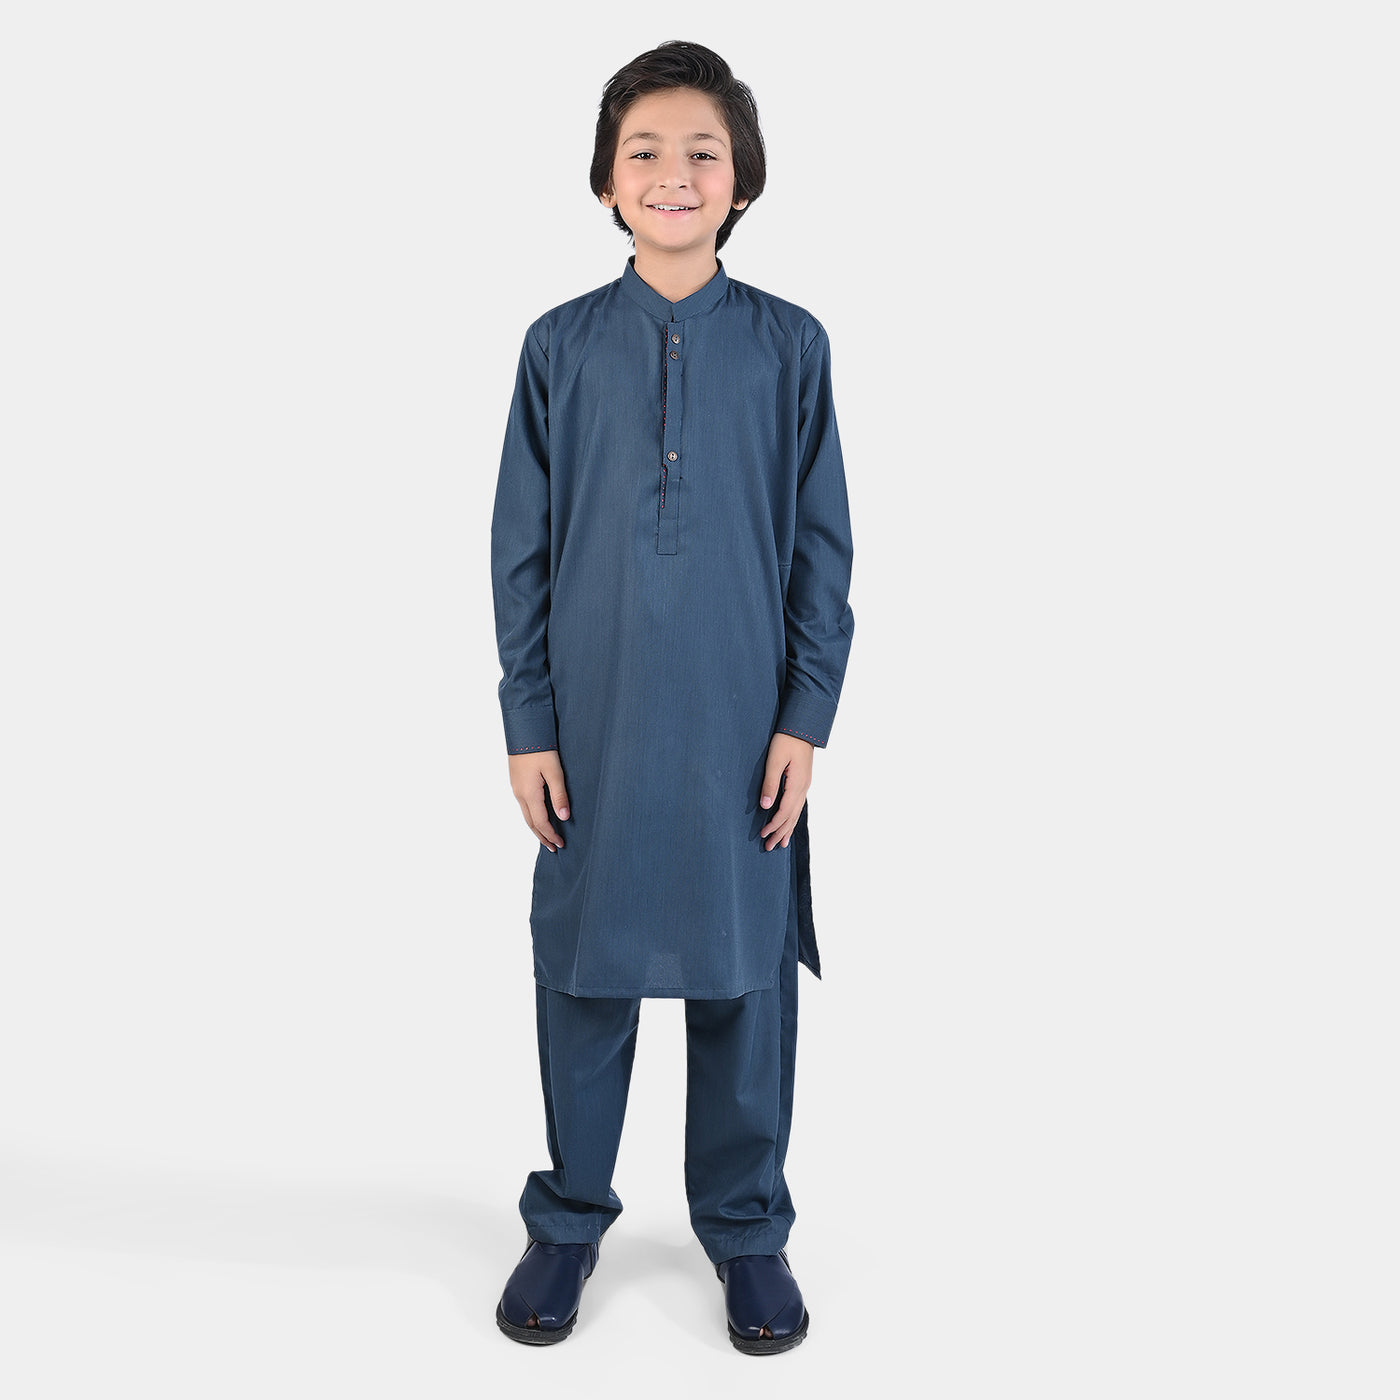 Boys Poly Viscose Shalwar Suit (Blended)-Teal blue